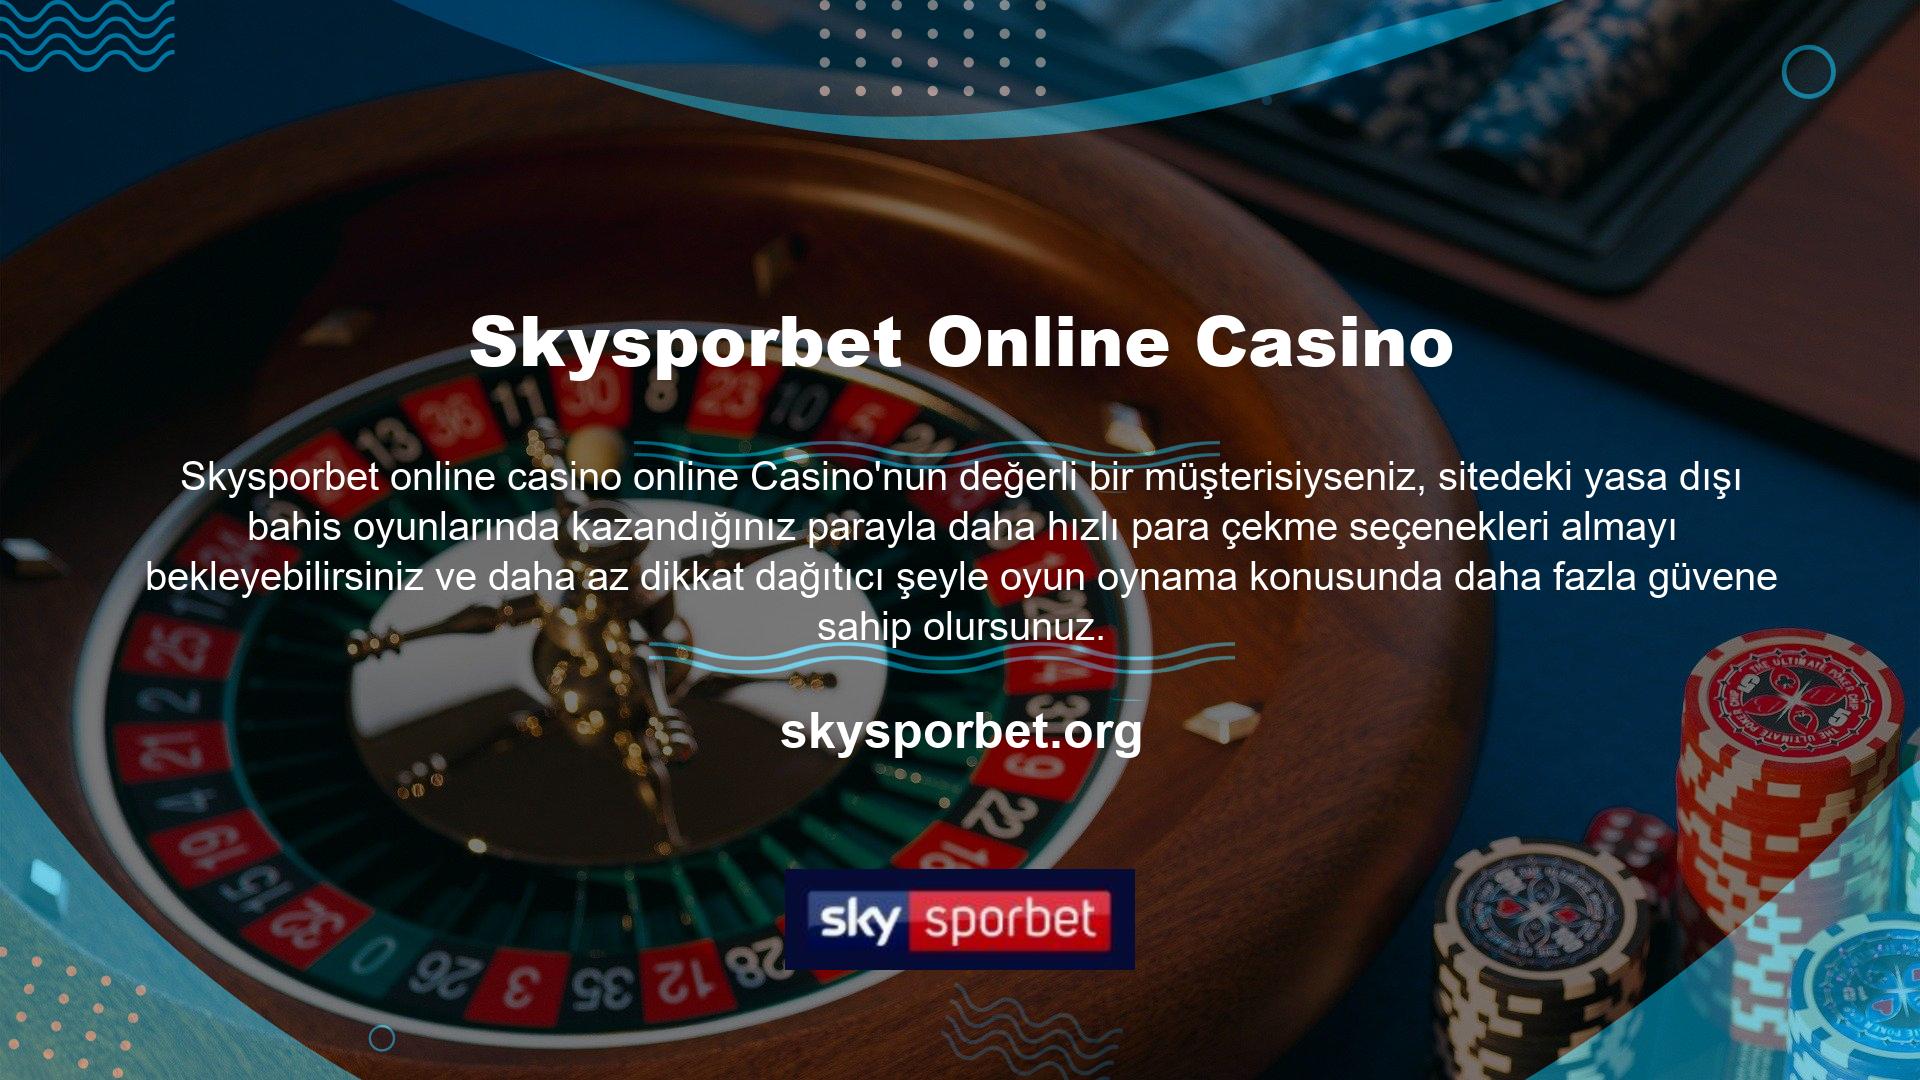 Web sayfaları üzerinde yapılan bir araştırma, Çevrimiçi Casino sayfasının en güvenilir sayfalar arasında olduğunu göstermektedir